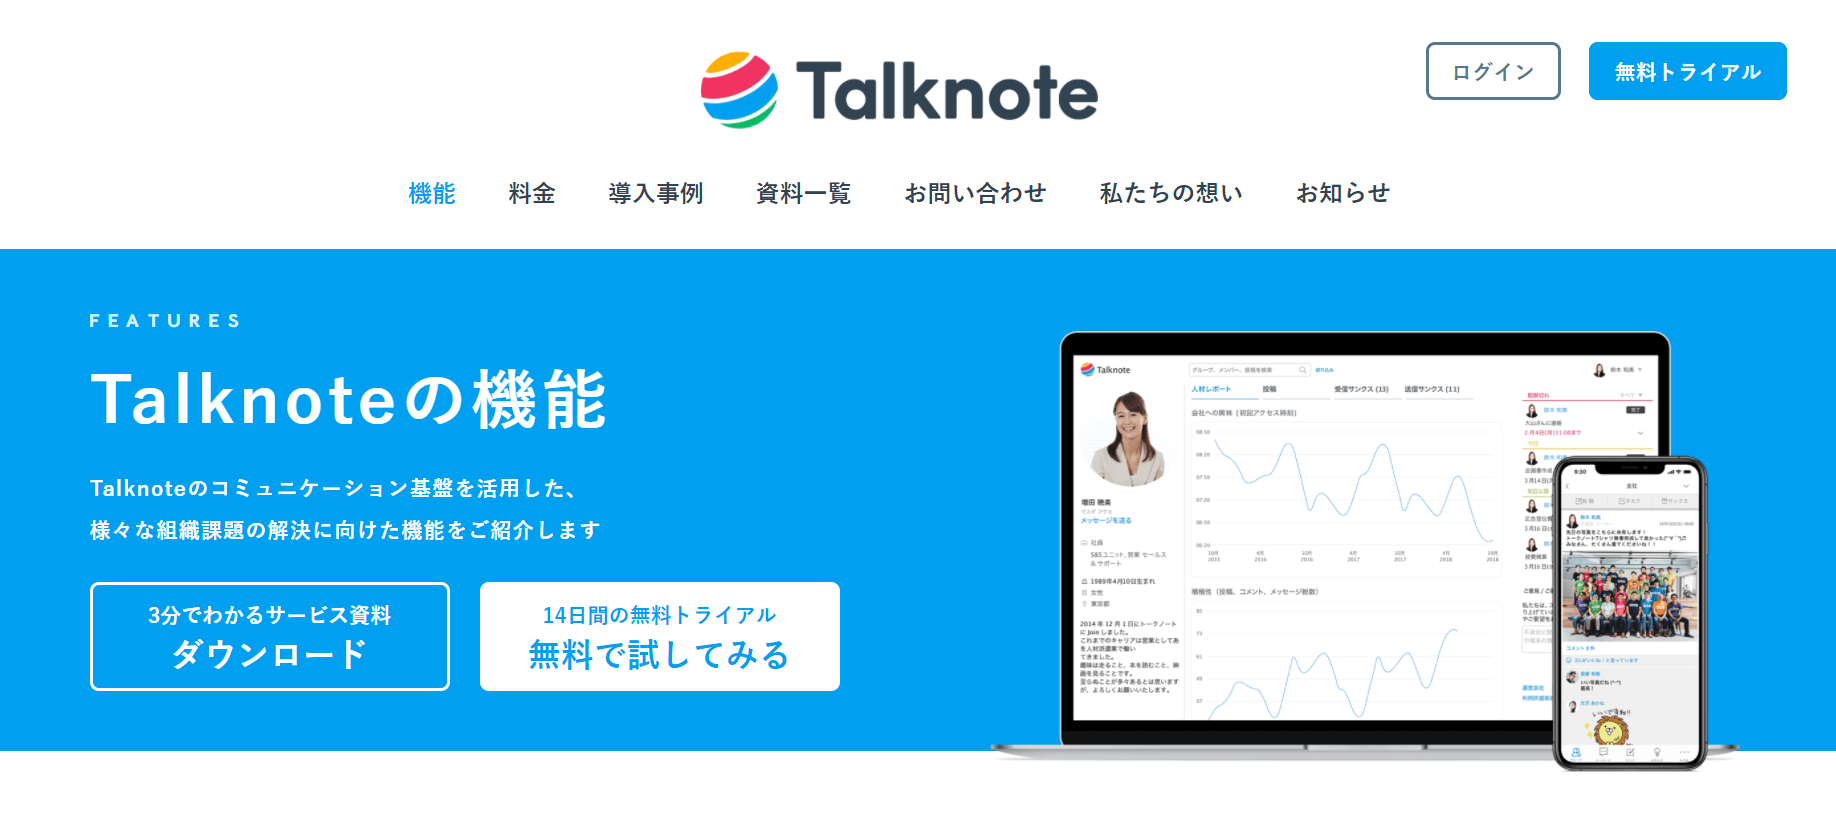 talknote_トップページ